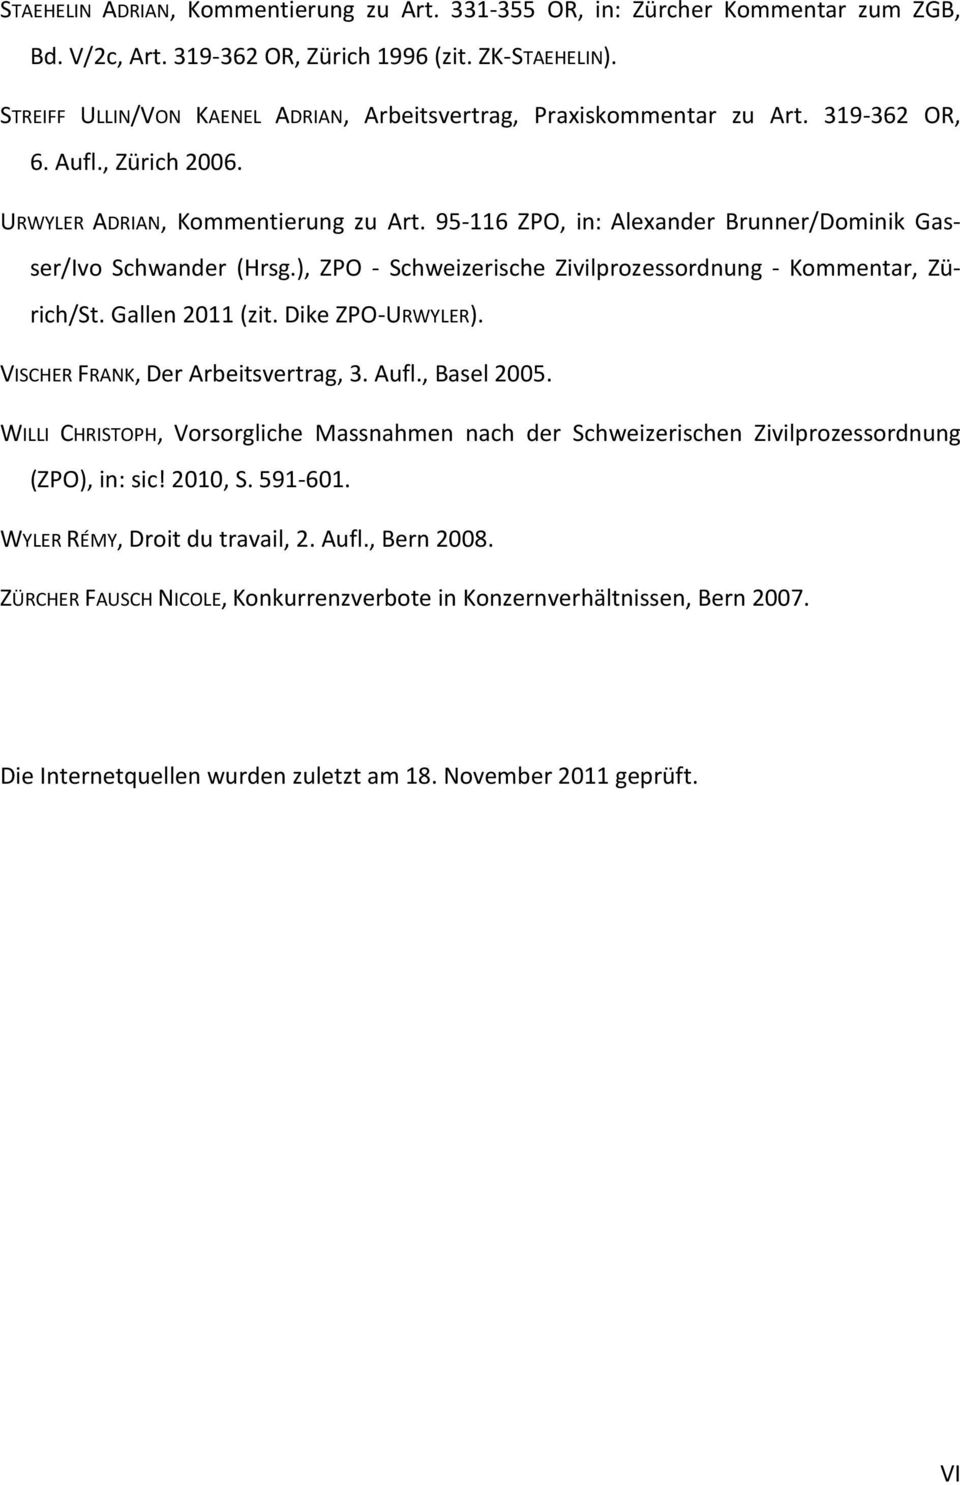 95-116 ZPO, in: Alexander Brunner/Dominik Gasser/Ivo Schwander (Hrsg.), ZPO - Schweizerische Zivilprozessordnung - Kommentar, Zürich/St. Gallen 2011 (zit. Dike ZPO-URWYLER).